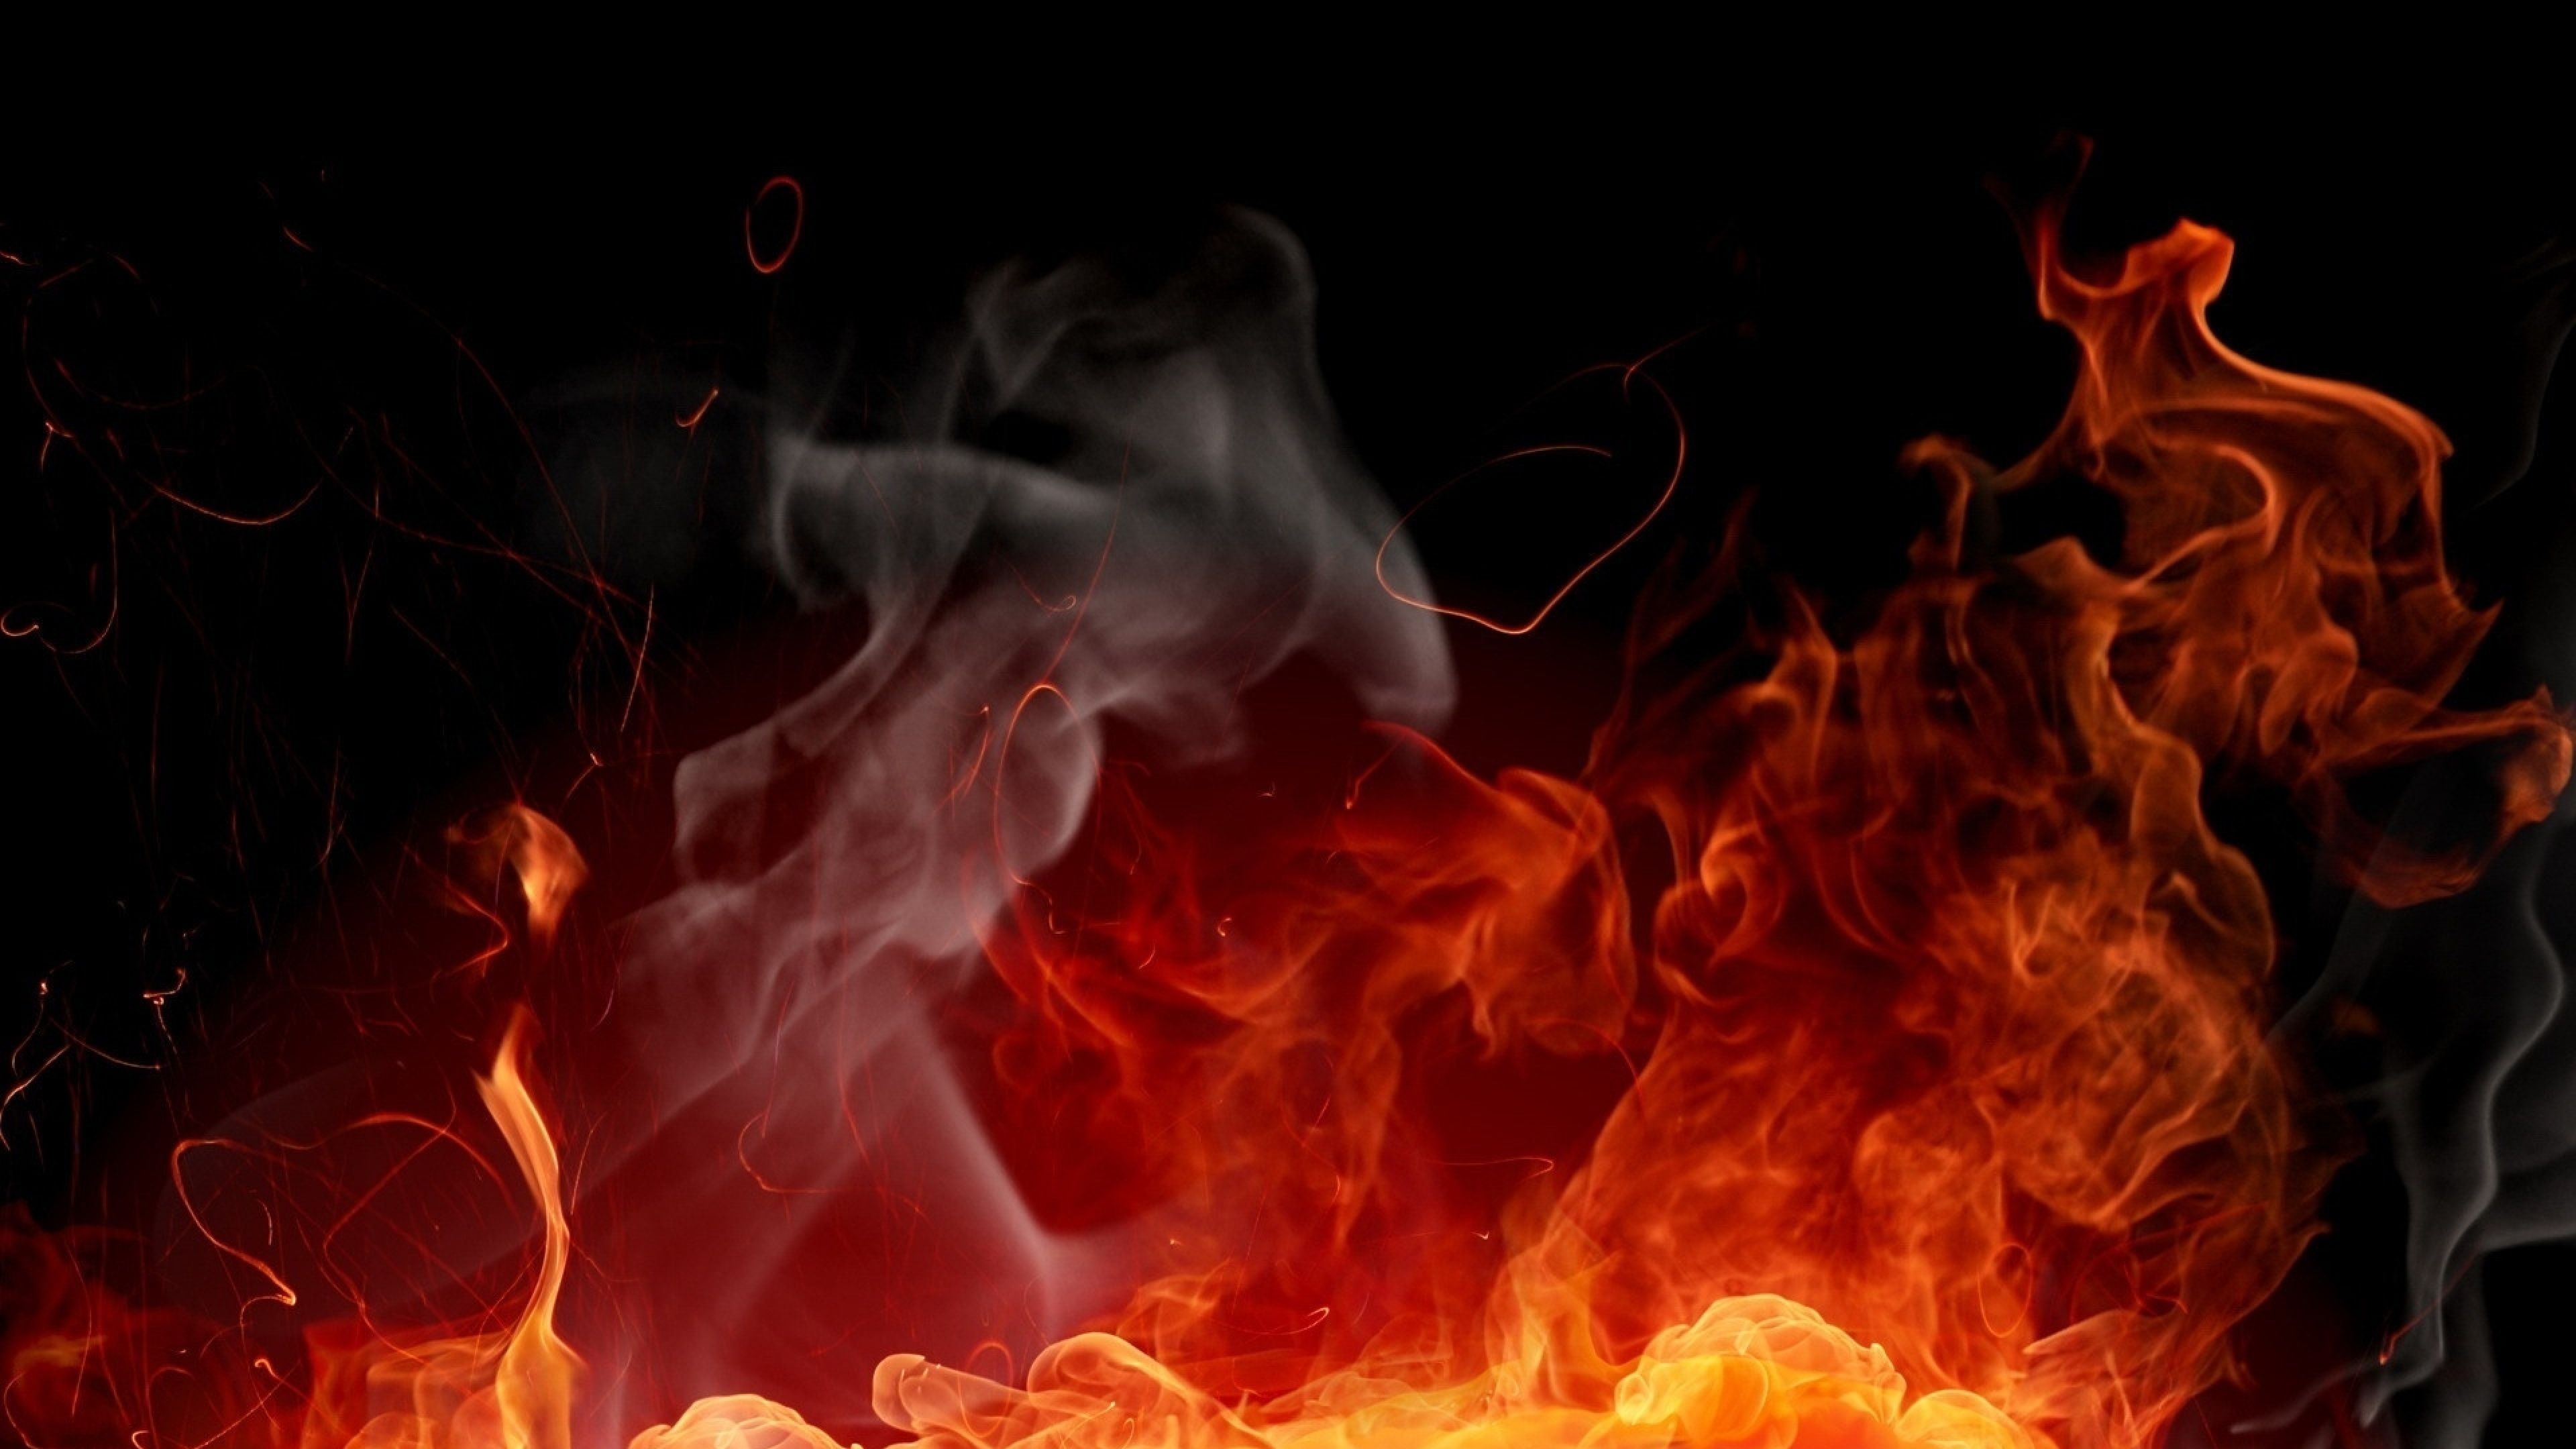 4K fire, Burning flames, Blazing inferno, Fiery wallpapers, Intense heat, 3840x2160 4K Desktop